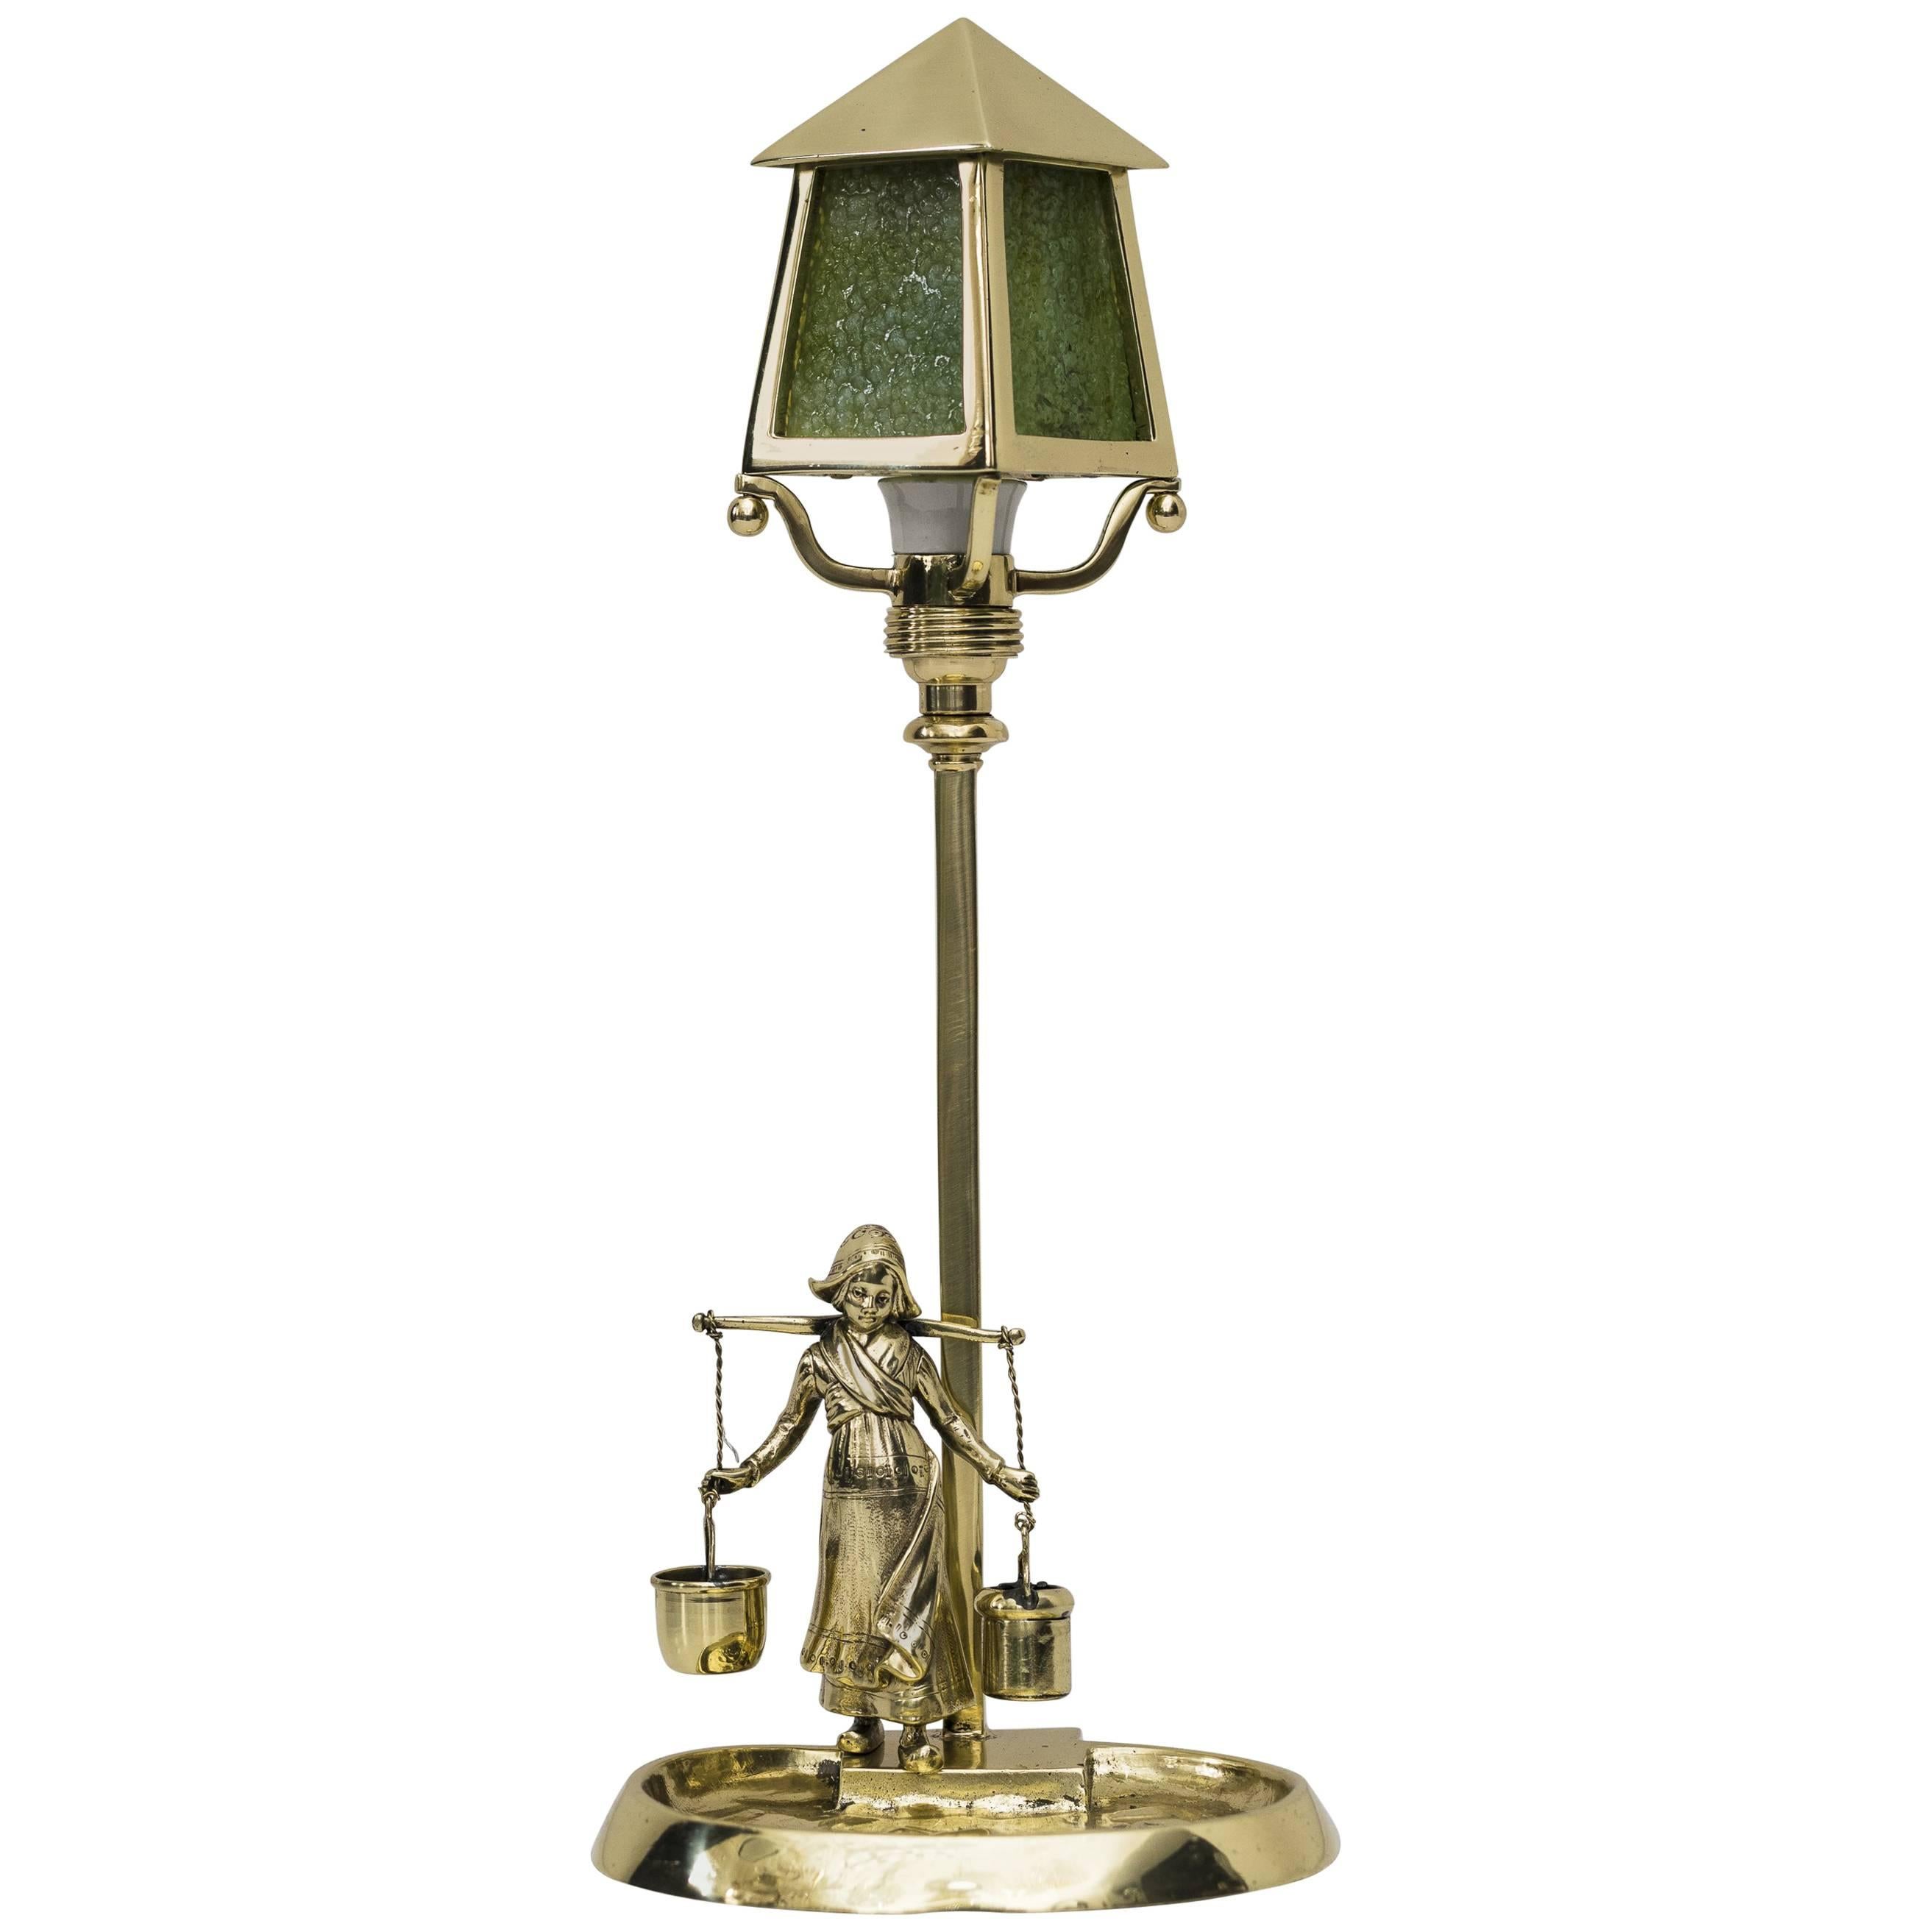 Jugendstil Table Lamp with Green Opaline Glass